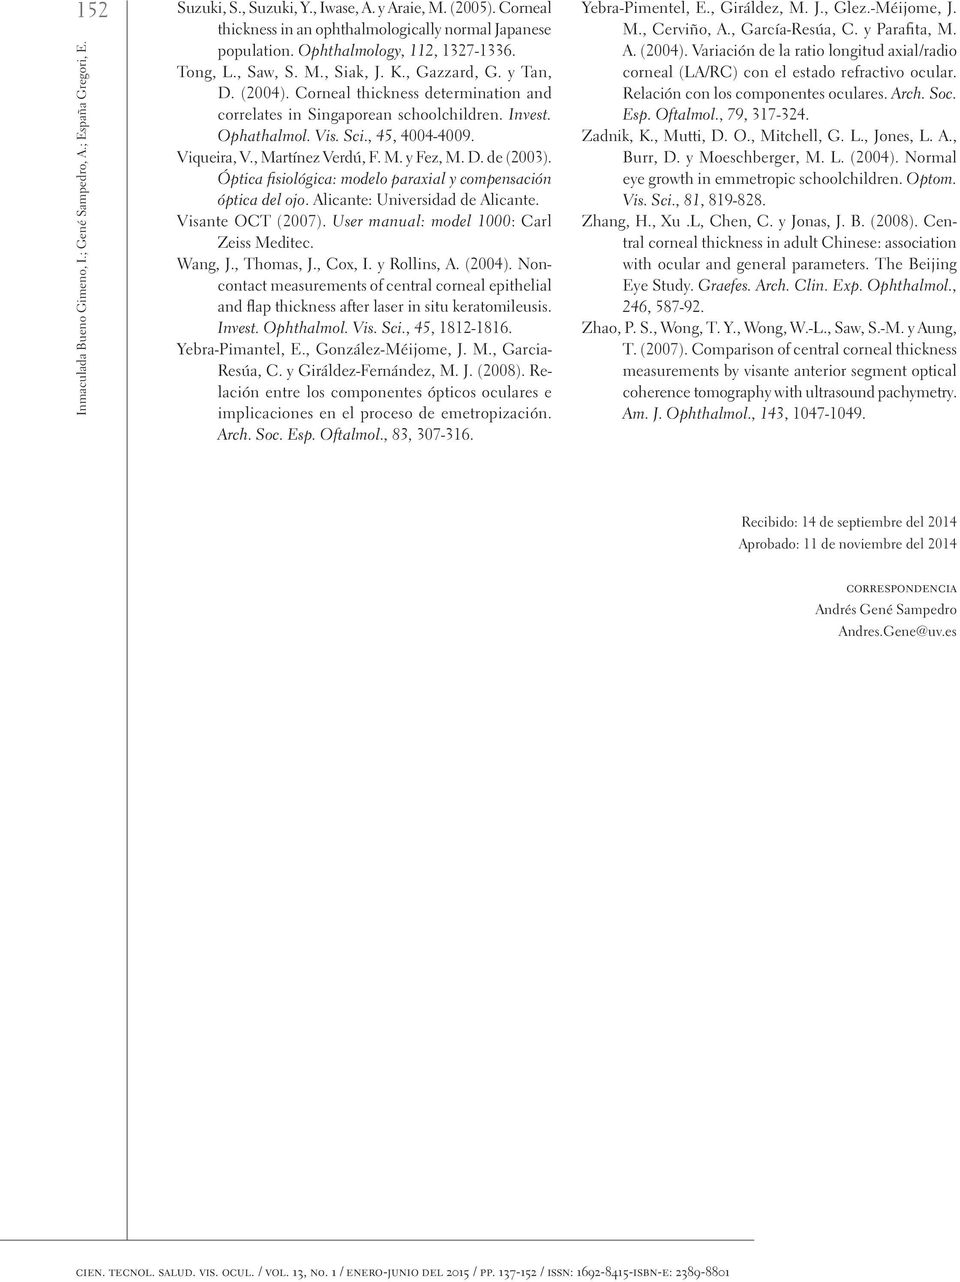 Sci., 45, 4004-4009. Viqueira, V., Martínez Verdú, F. M. y Fez, M. D. de (2003). Óptica fisiológica: modelo paraxial y compensación óptica del ojo. Alicante: Universidad de Alicante.